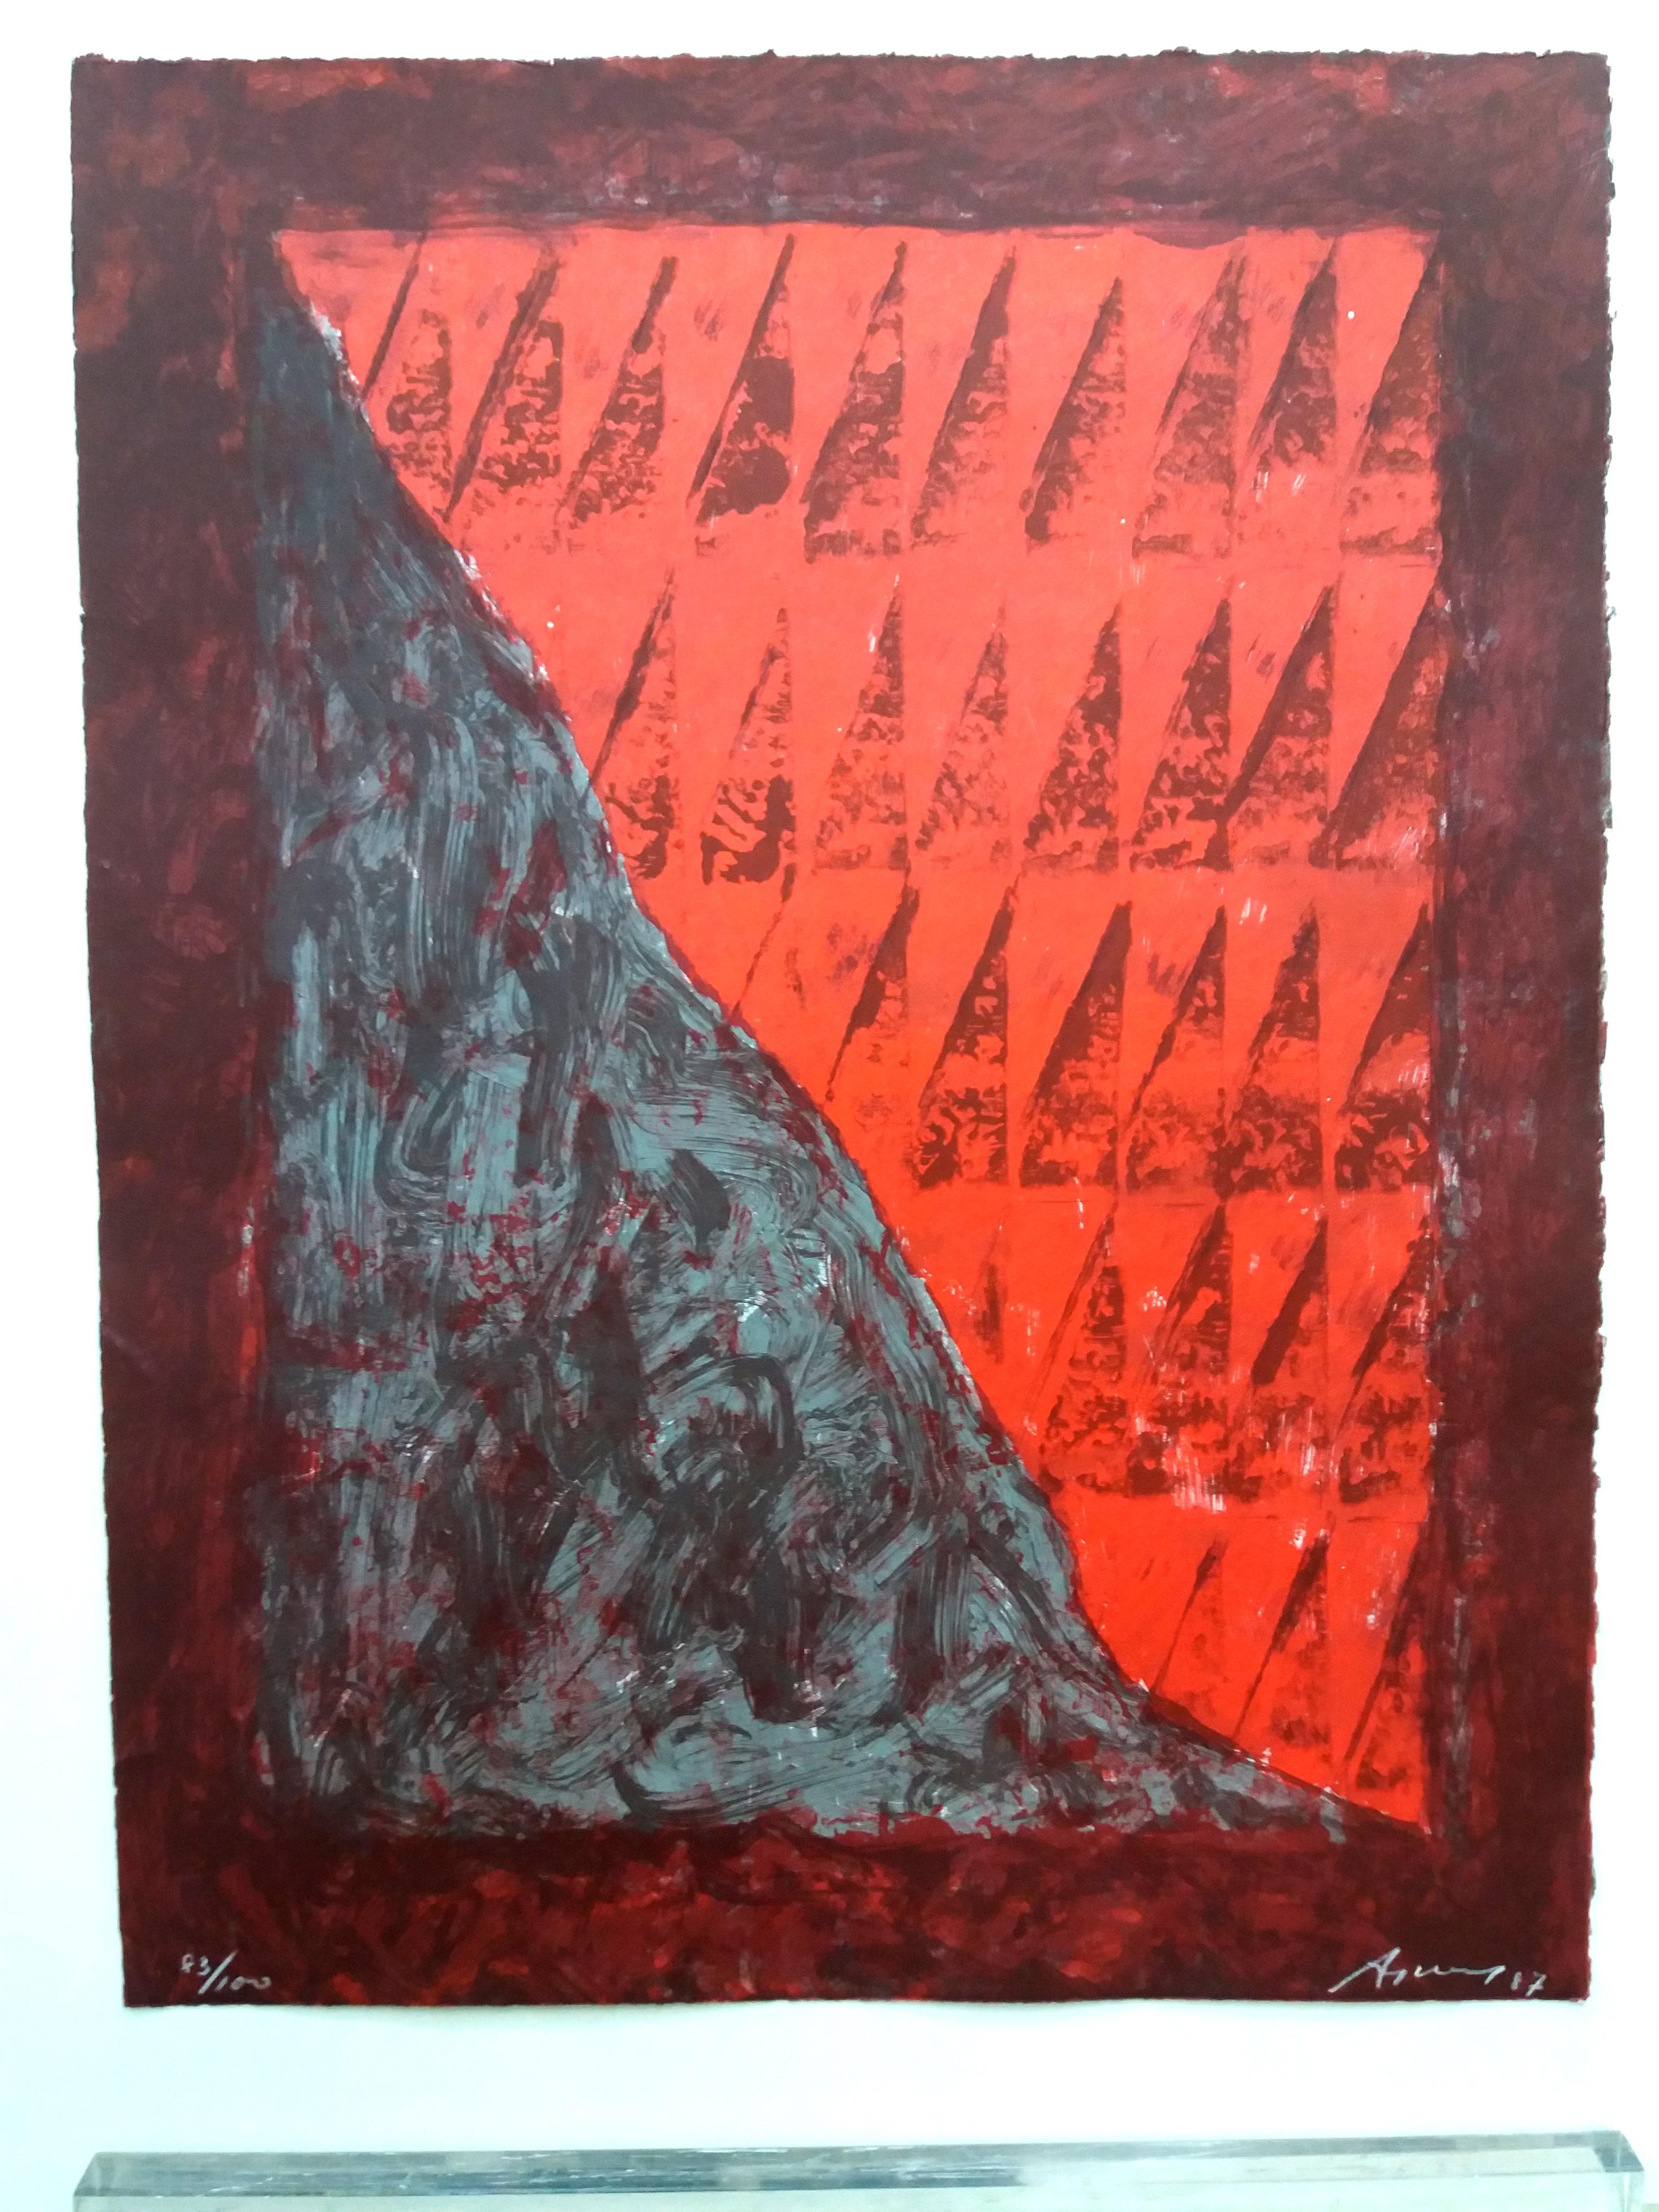 Rotes und braunes Original-Lithographie-Gemälde, gerahmt
 Argimon (Sarriá 1929 - Barcelona 1996) ist einer der großen katalanischen Künstler des Informalismus. Dieser Maler, Graveur und Bildhauer hat einen Großteil der Kunst des 20. Jahrhunderts